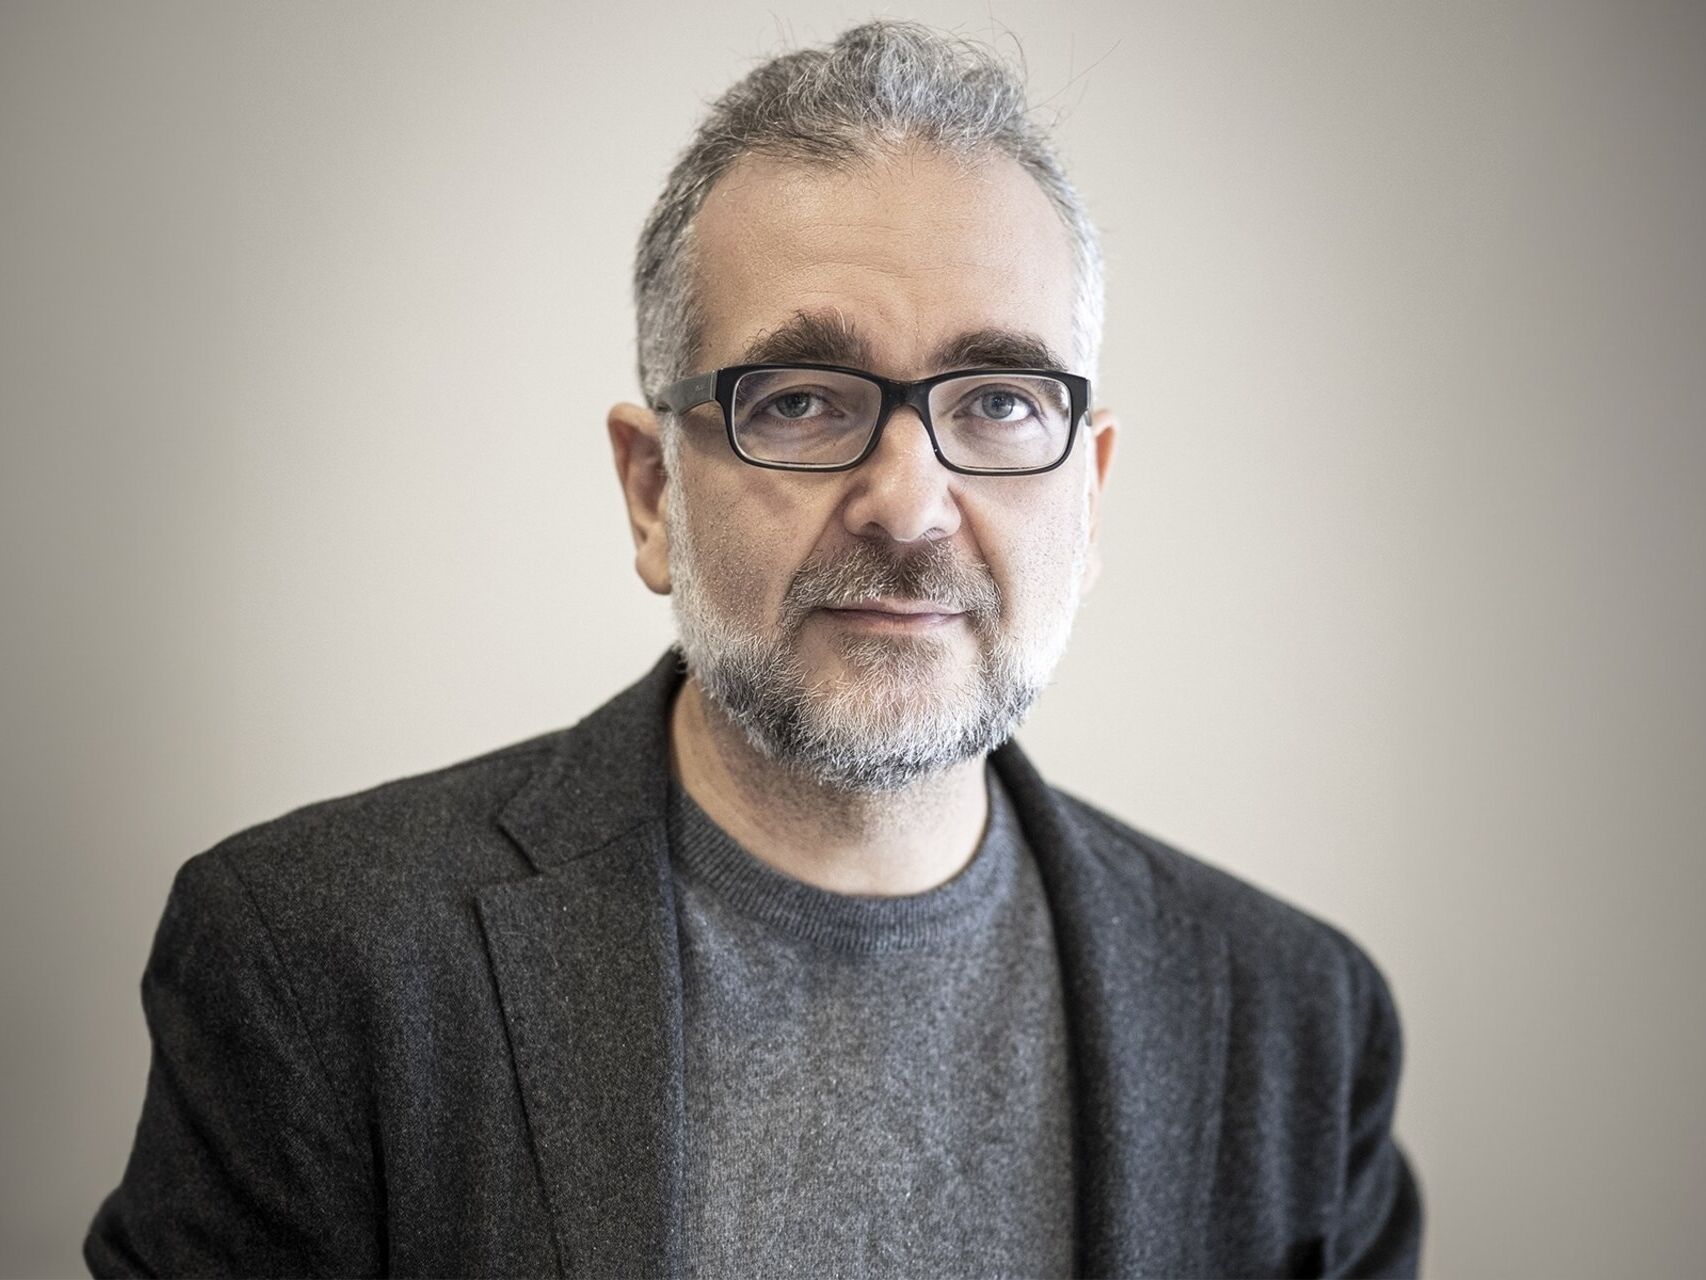 Stefano Epifani: Stefano Epifani është President i Fondacionit për Qëndrueshmërinë Dixhitale dhe profesor i kësaj lënde në Universitetin e Pavias